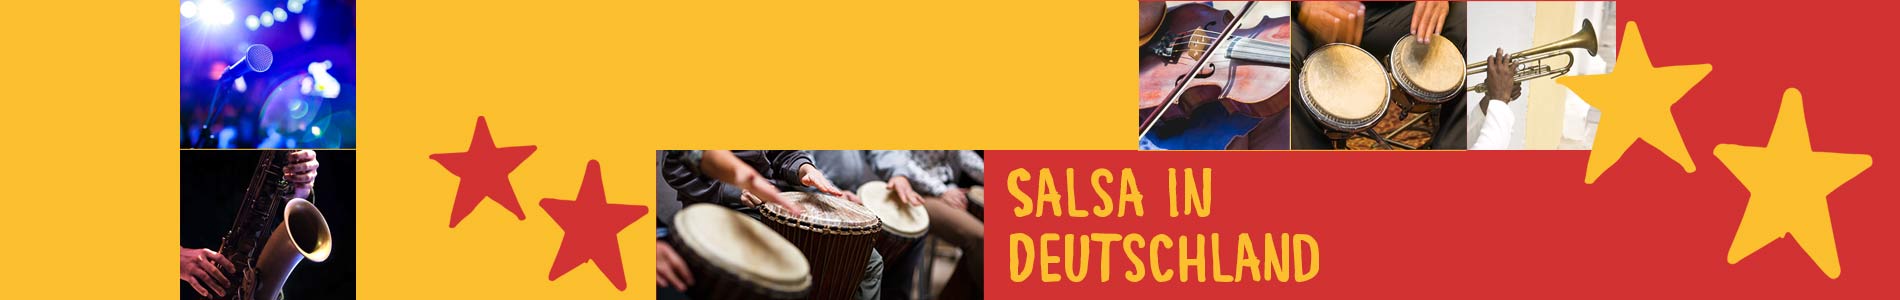 Salsa in Dellfeld – Salsa lernen und tanzen, Tanzkurse, Partys, Veranstaltungen